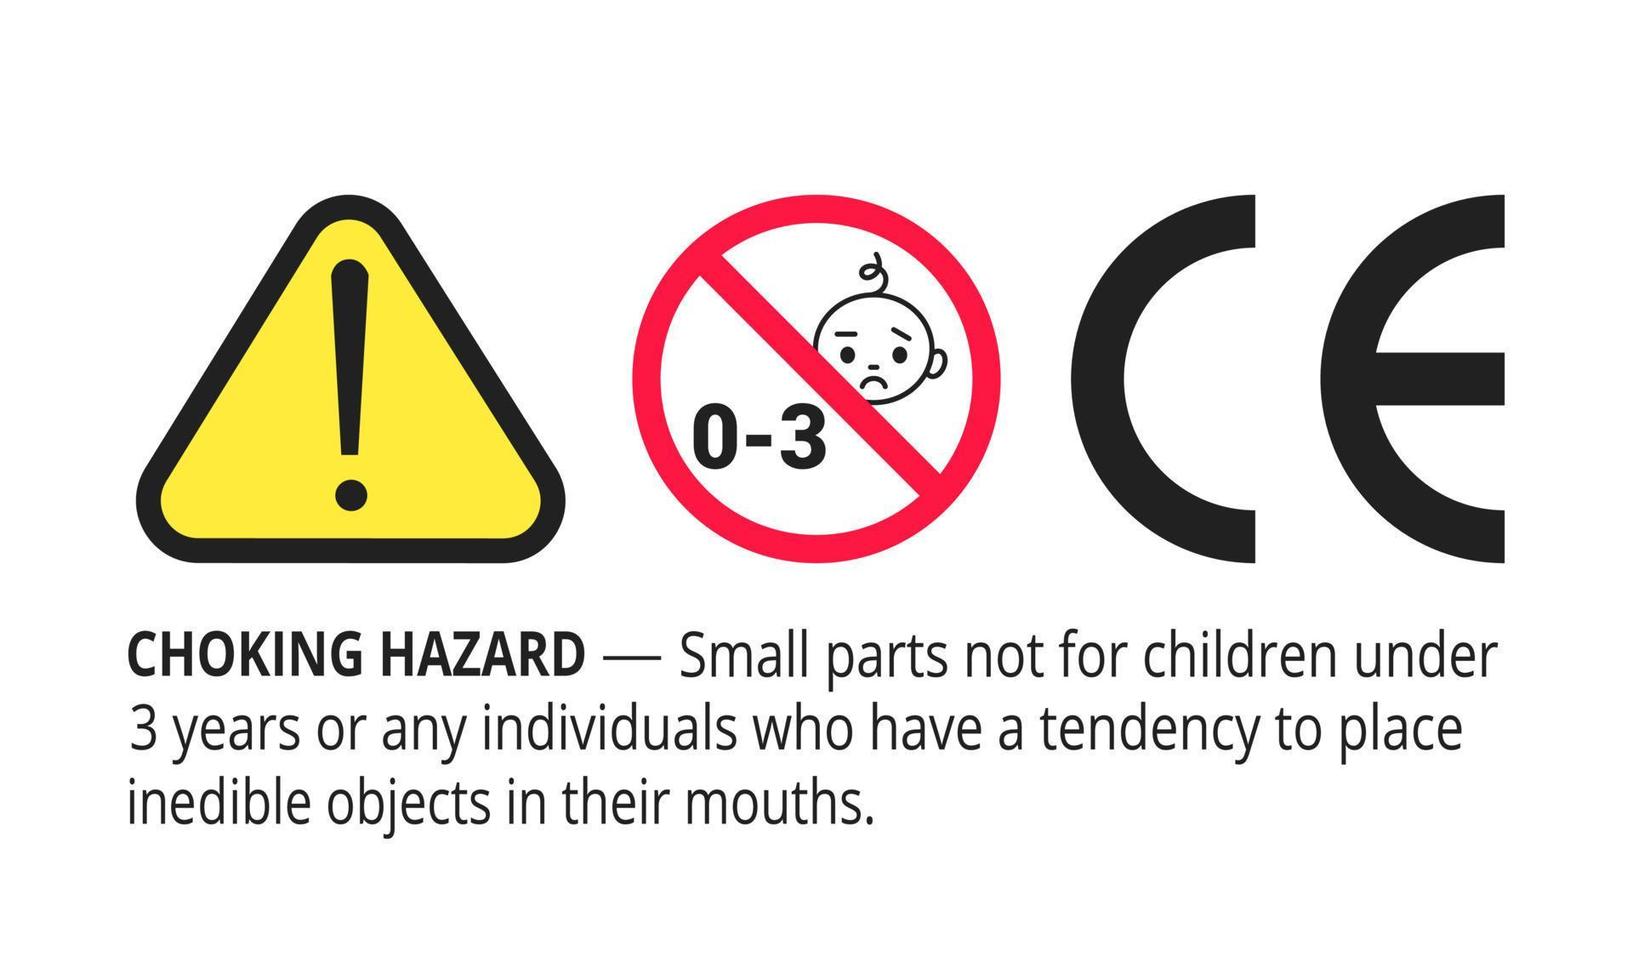 verstikkingsgevaar verboden teken sticker niet geschikt voor kinderen onder de 3 jaar geïsoleerd op een witte achtergrond vectorillustratie. gevarendriehoek, scherpe randen en kleine onderdelen gevaar. vector